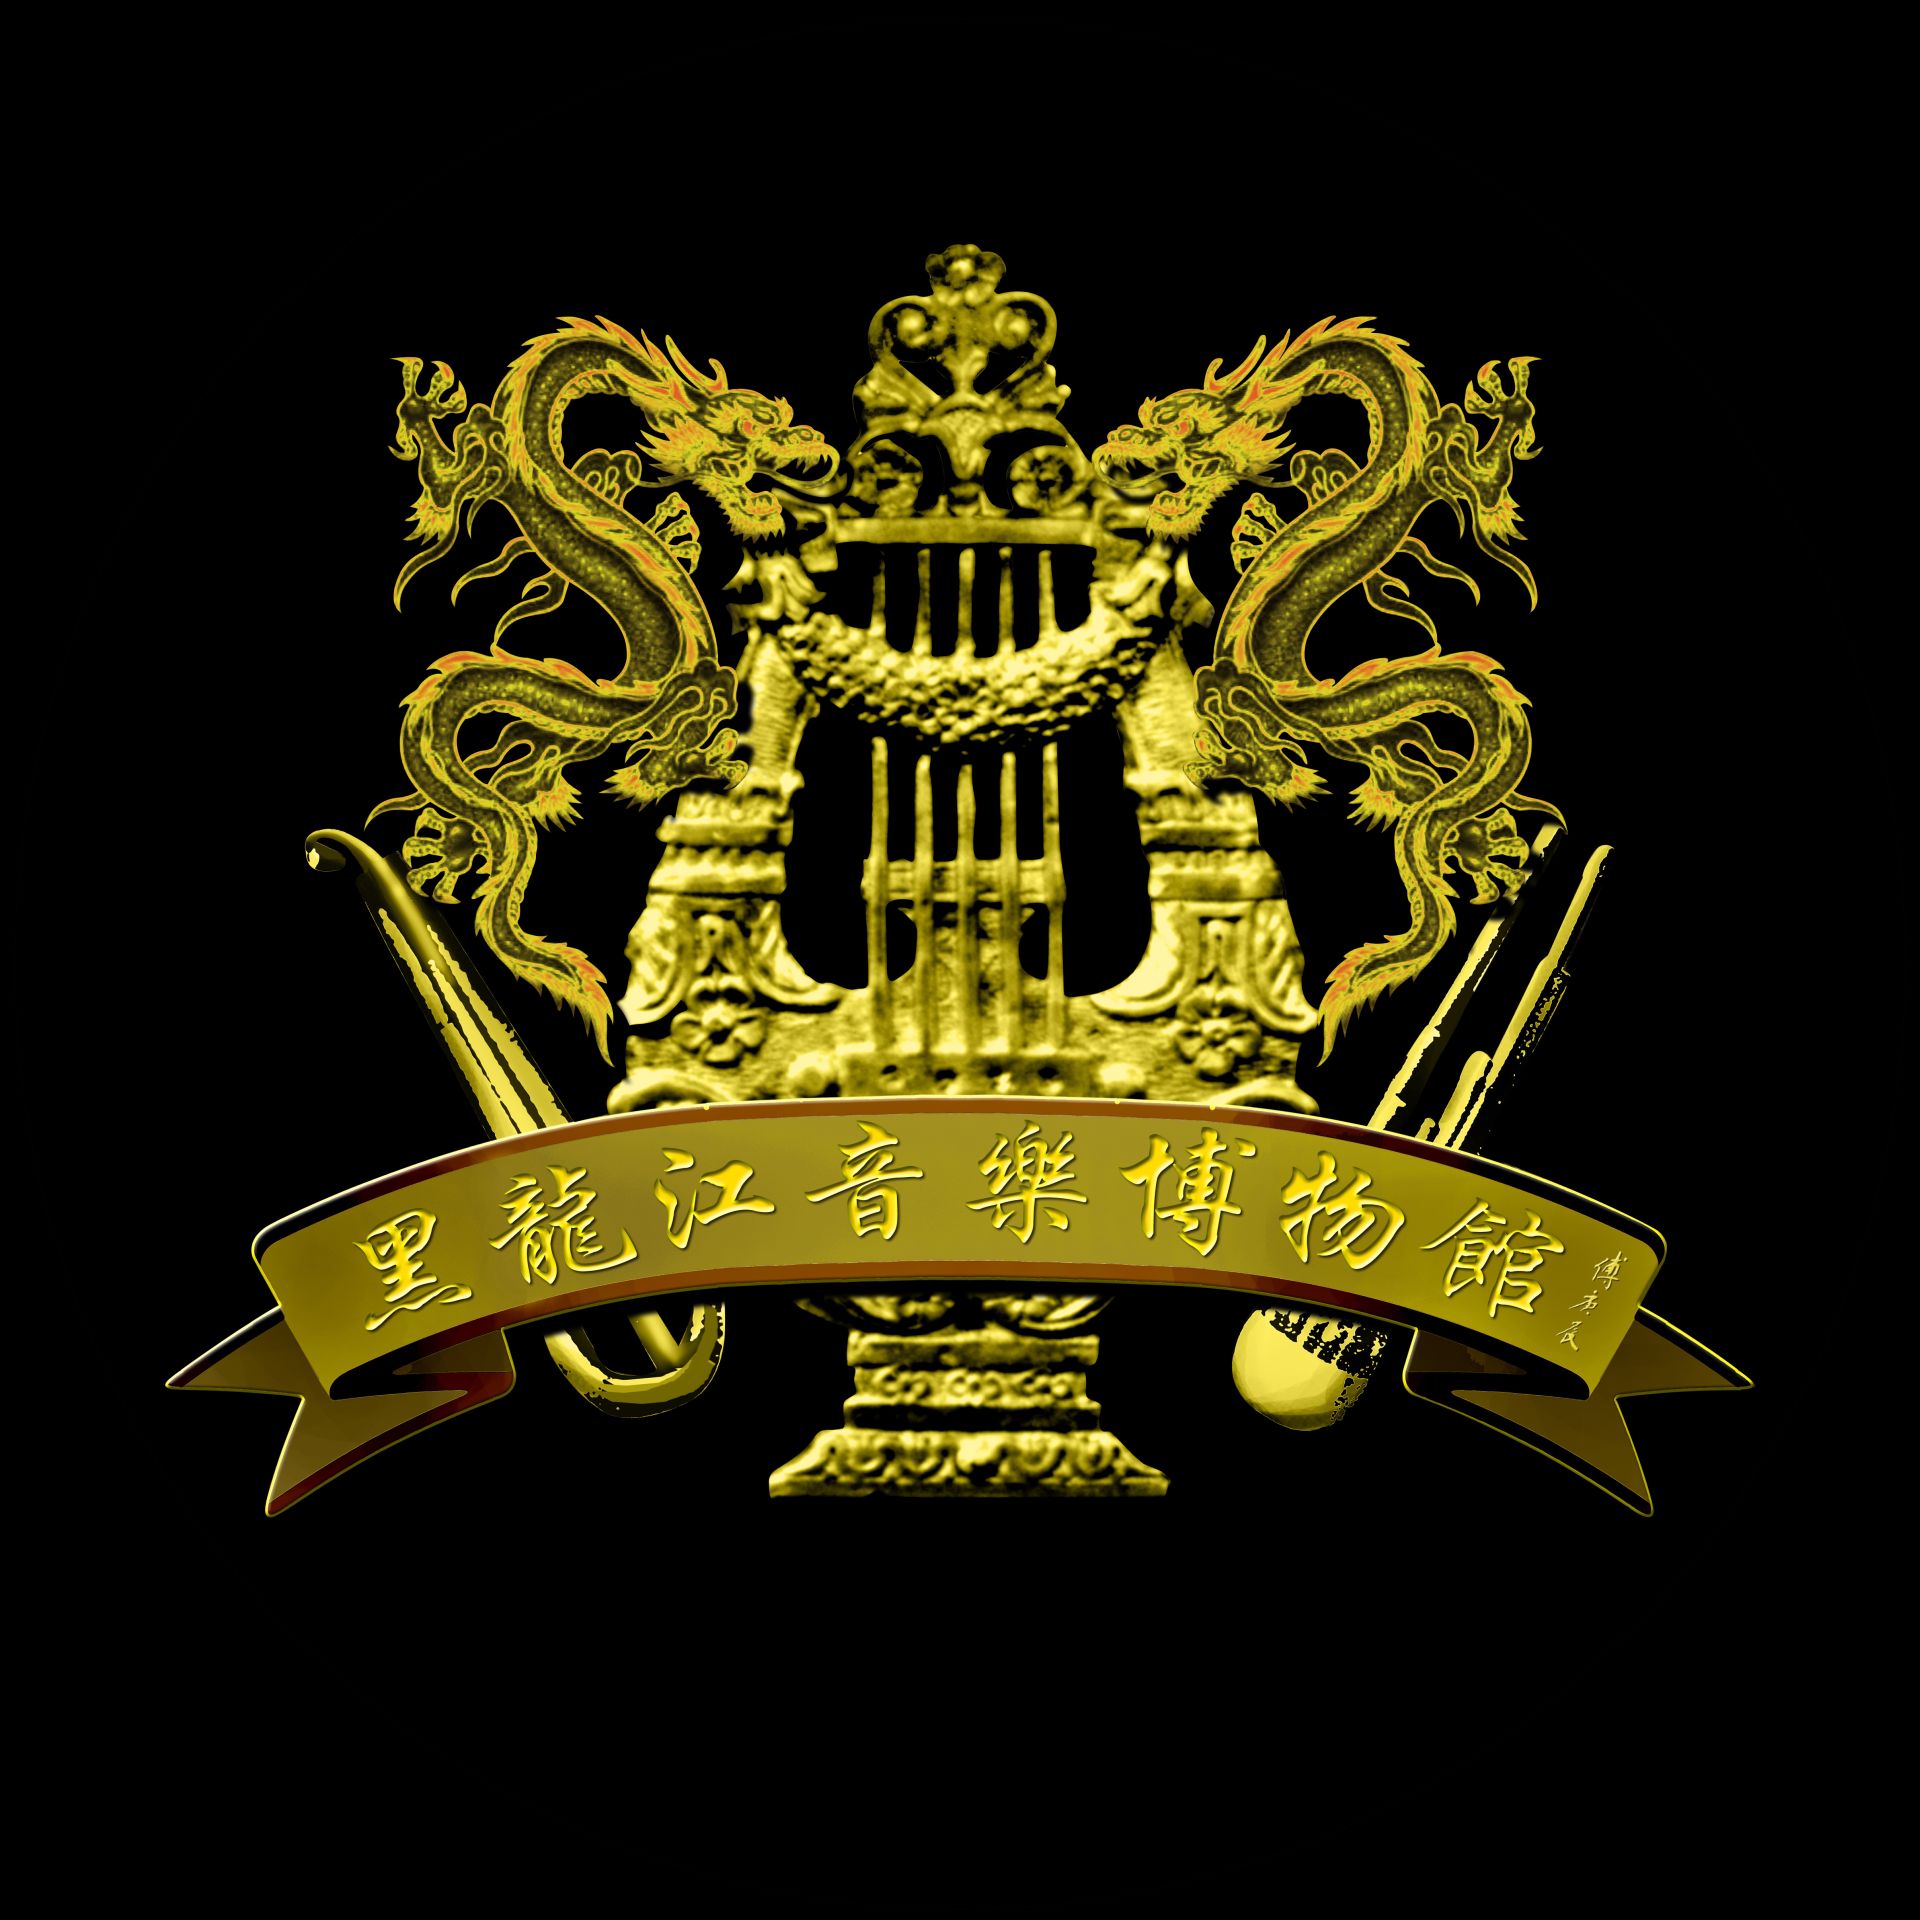 黑龍江音樂博物館館徽